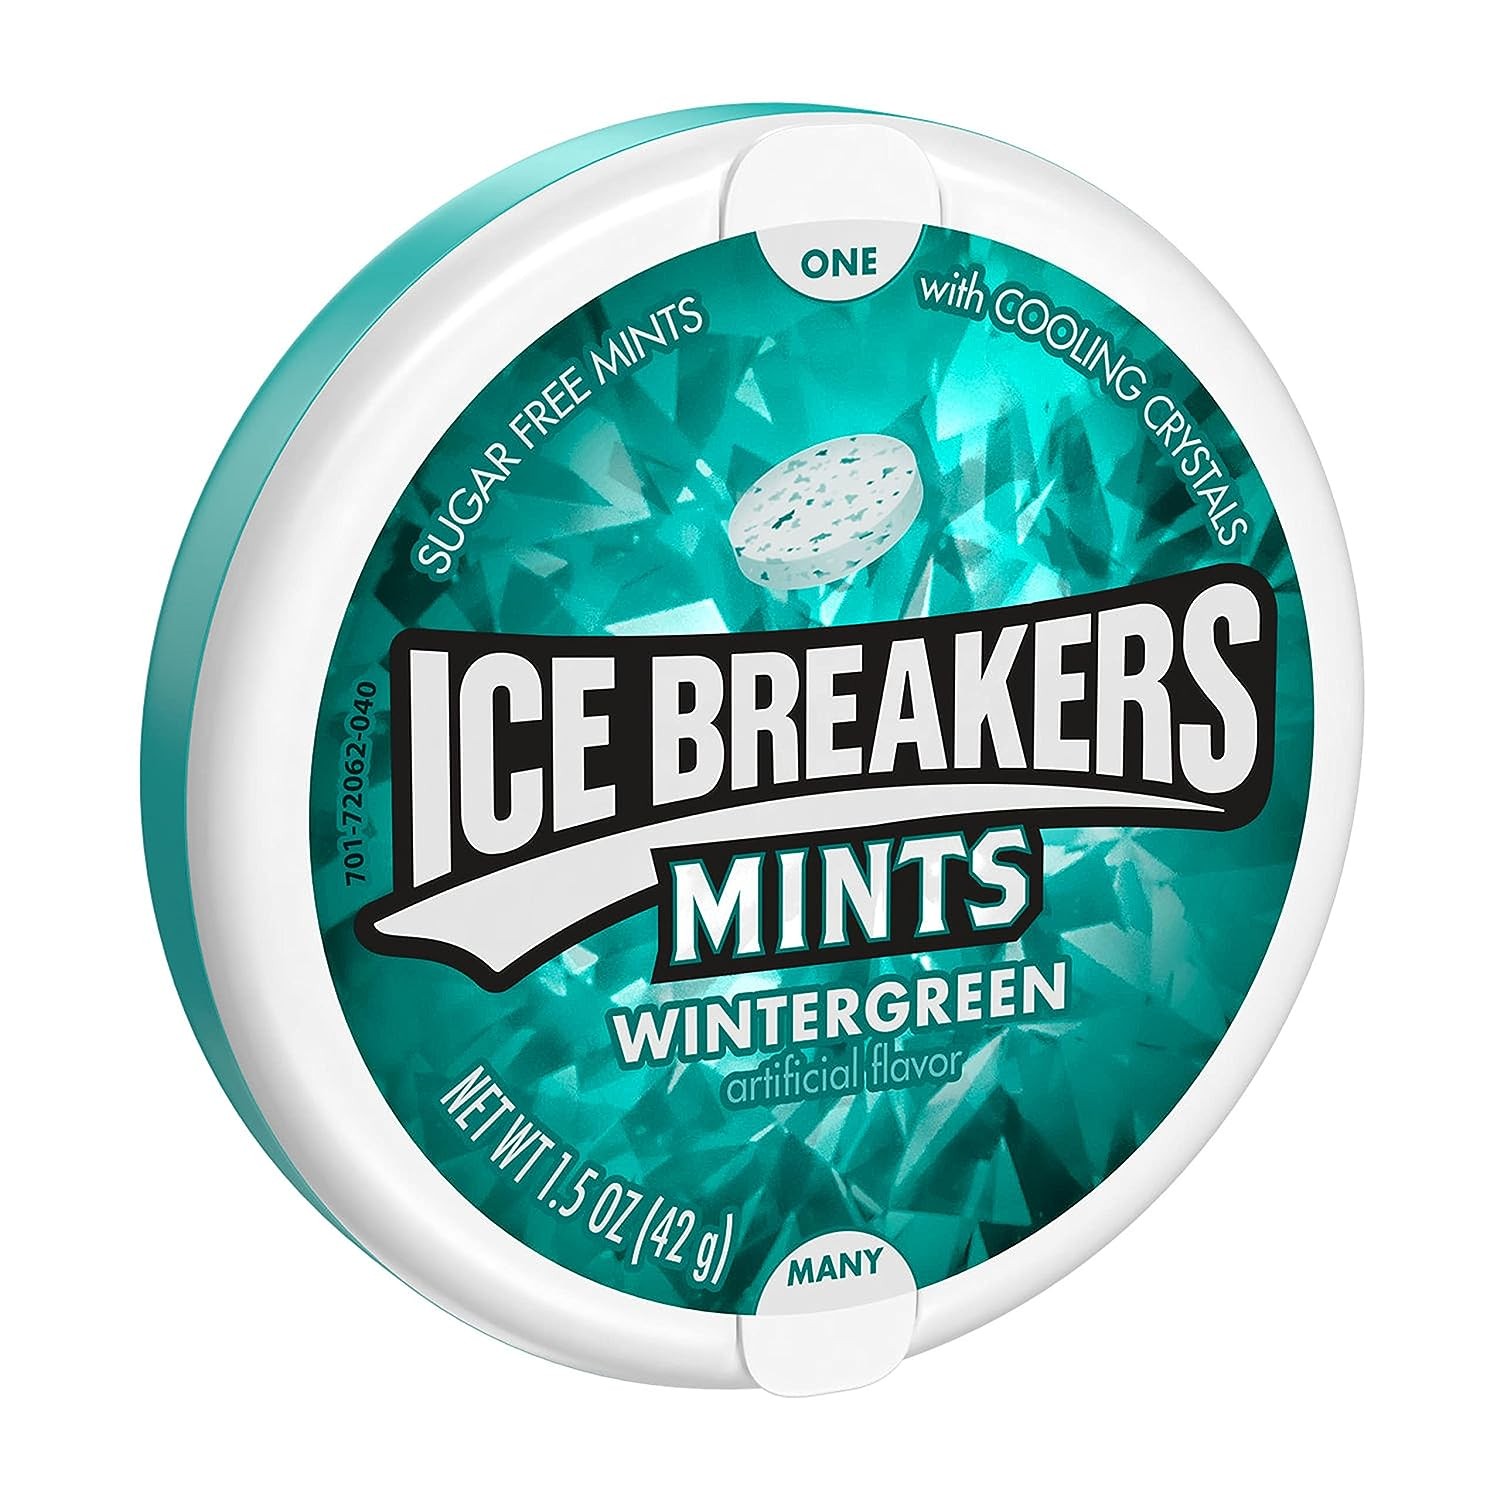 ICE BREAKERS MINTS WINTERGREEN 1.5oz